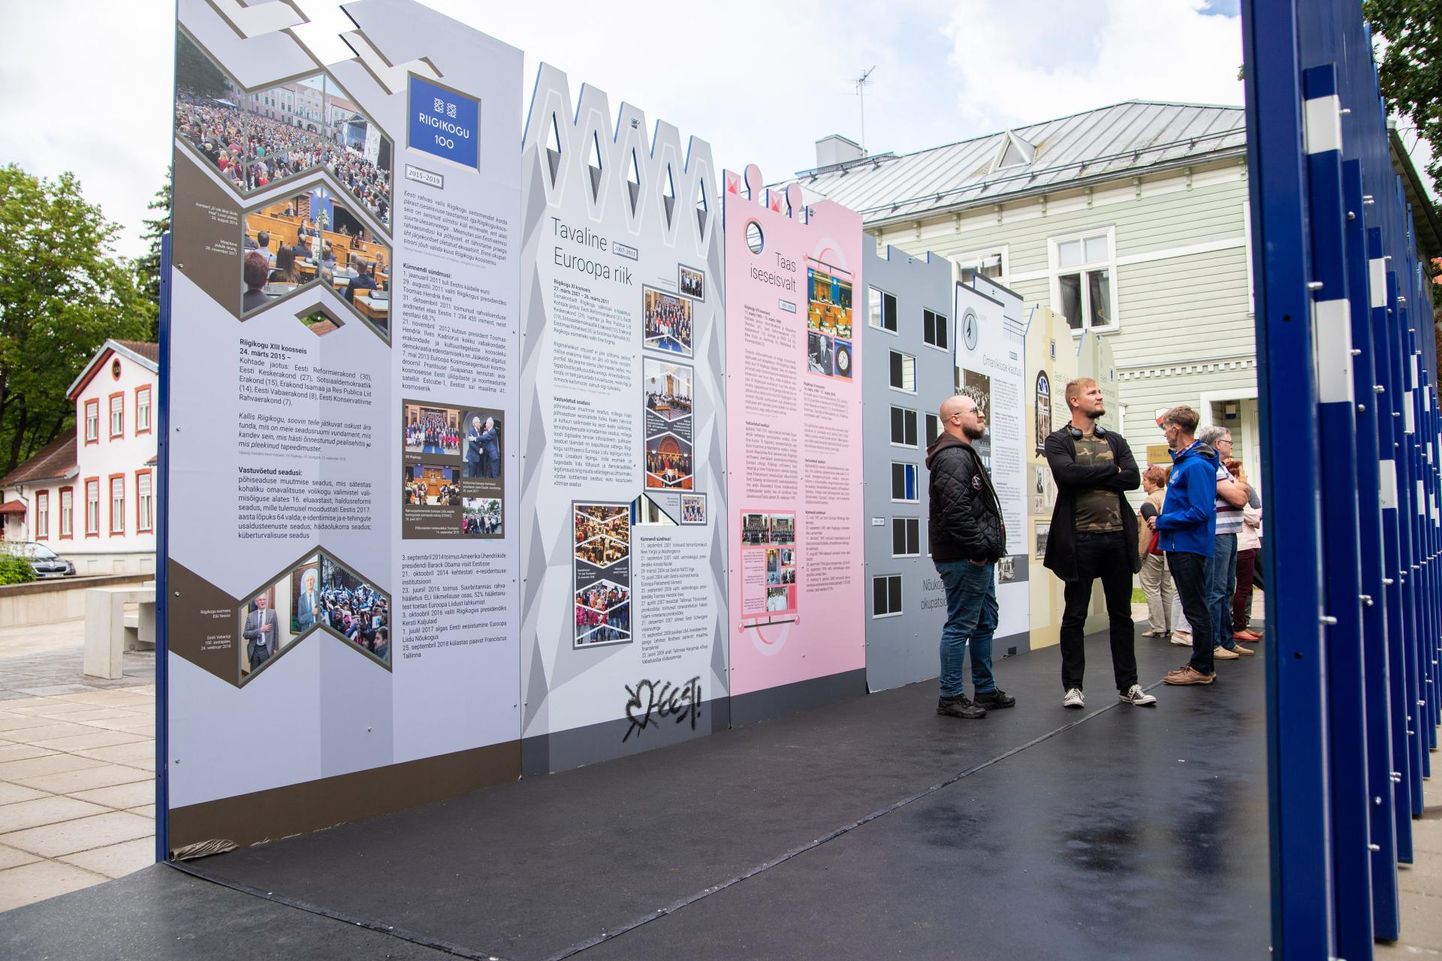 Näitus on kujundatud tänavana, mille majapaarid tähistavad esinduskogude läbitud aastakümneid.